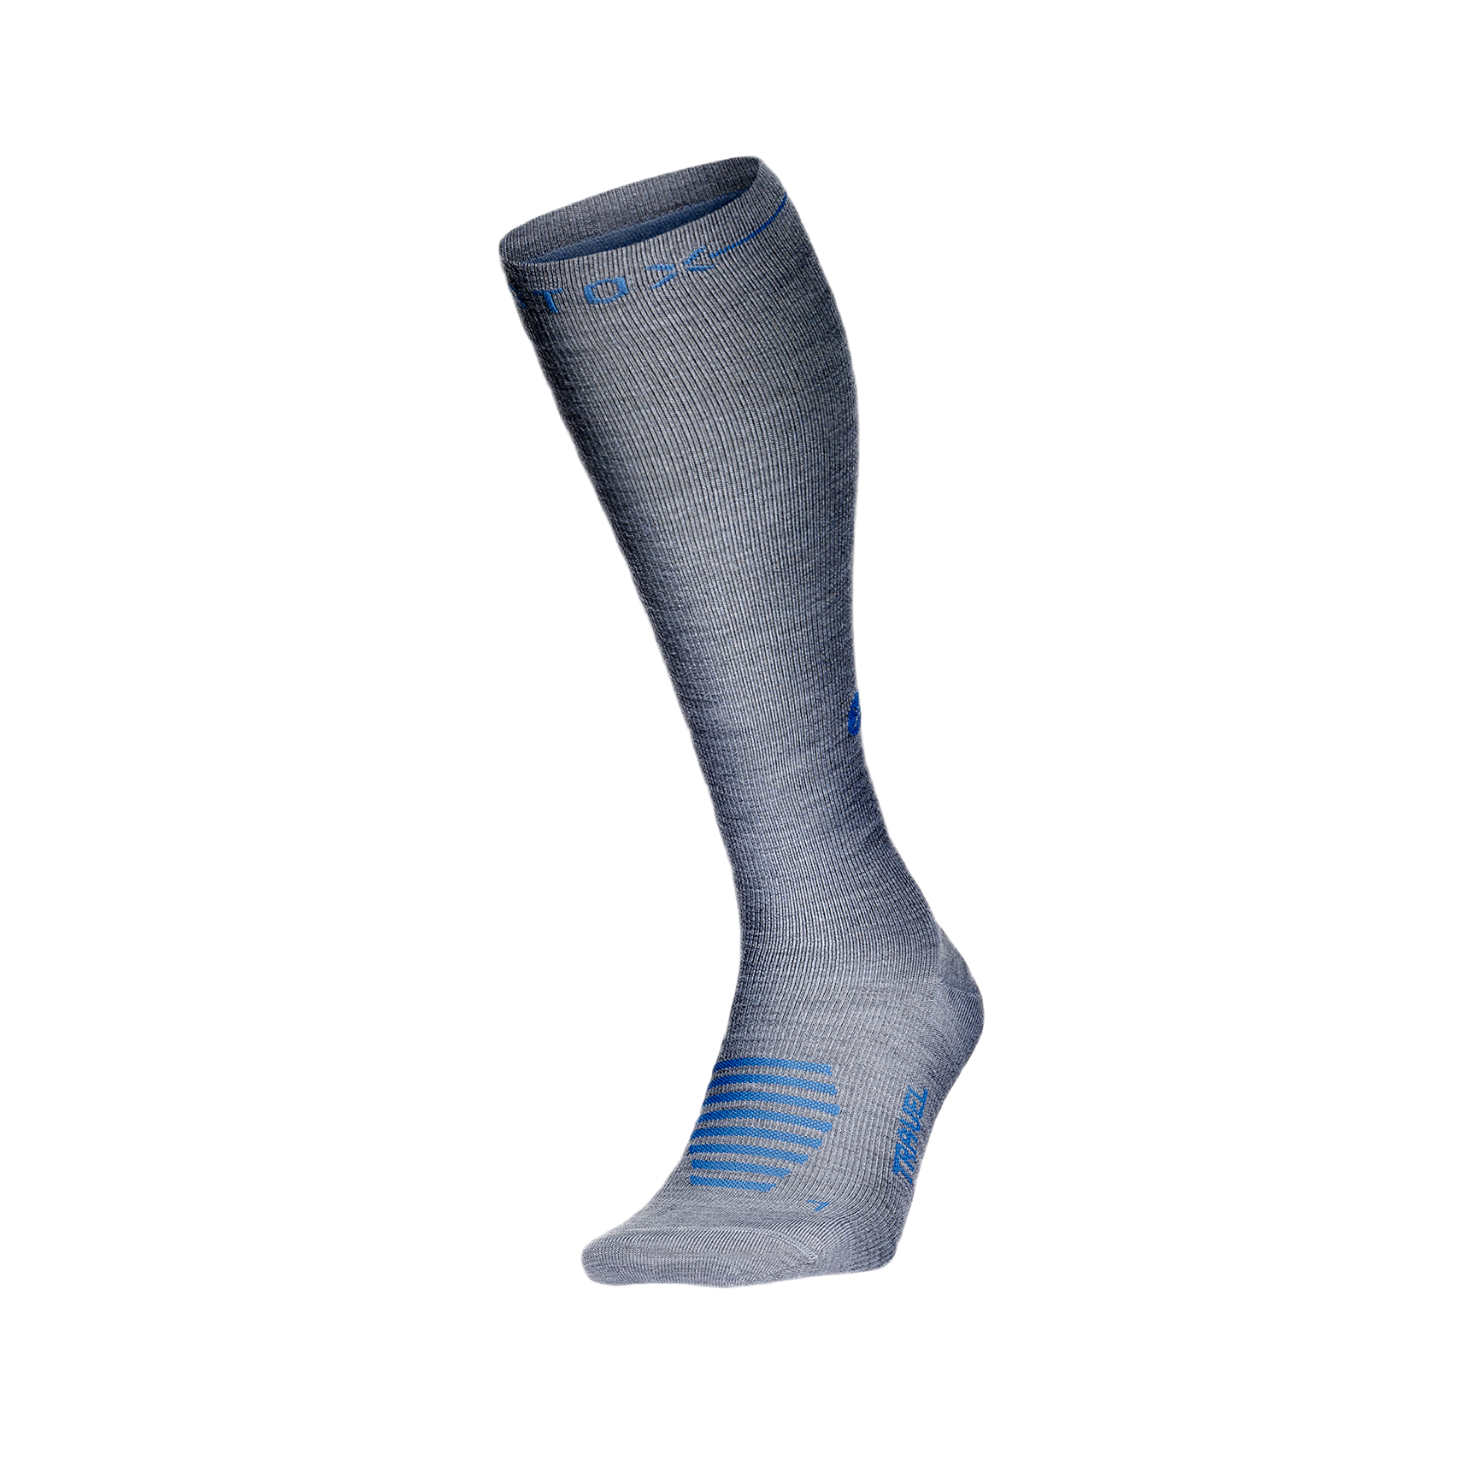 STOX Energy Socks - Reissokken voor Vrouwen - Premium compressiesokken - Travel Socks - Anti DVT - Reizigerstrombose - Voorkomt opgezwollen en vermoeide benen